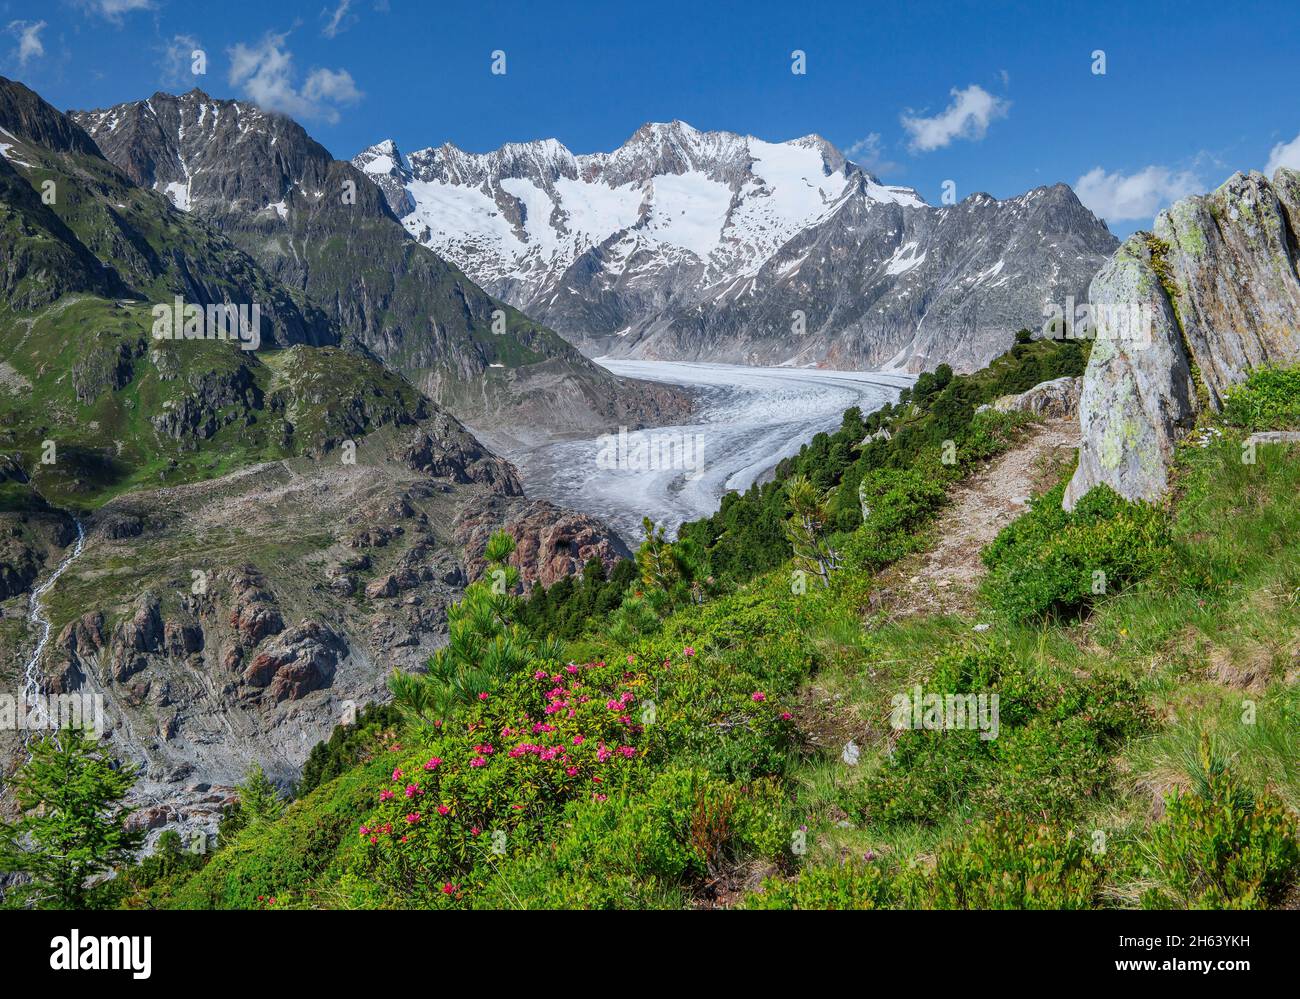 la rose alpine s'épanouit au-dessus du grand glacier d'aletsch contre le wannenhorn 3906m dans la région d'aletsch zone de randonnée, riederalp, alpes bernoises, valais, suisse Banque D'Images